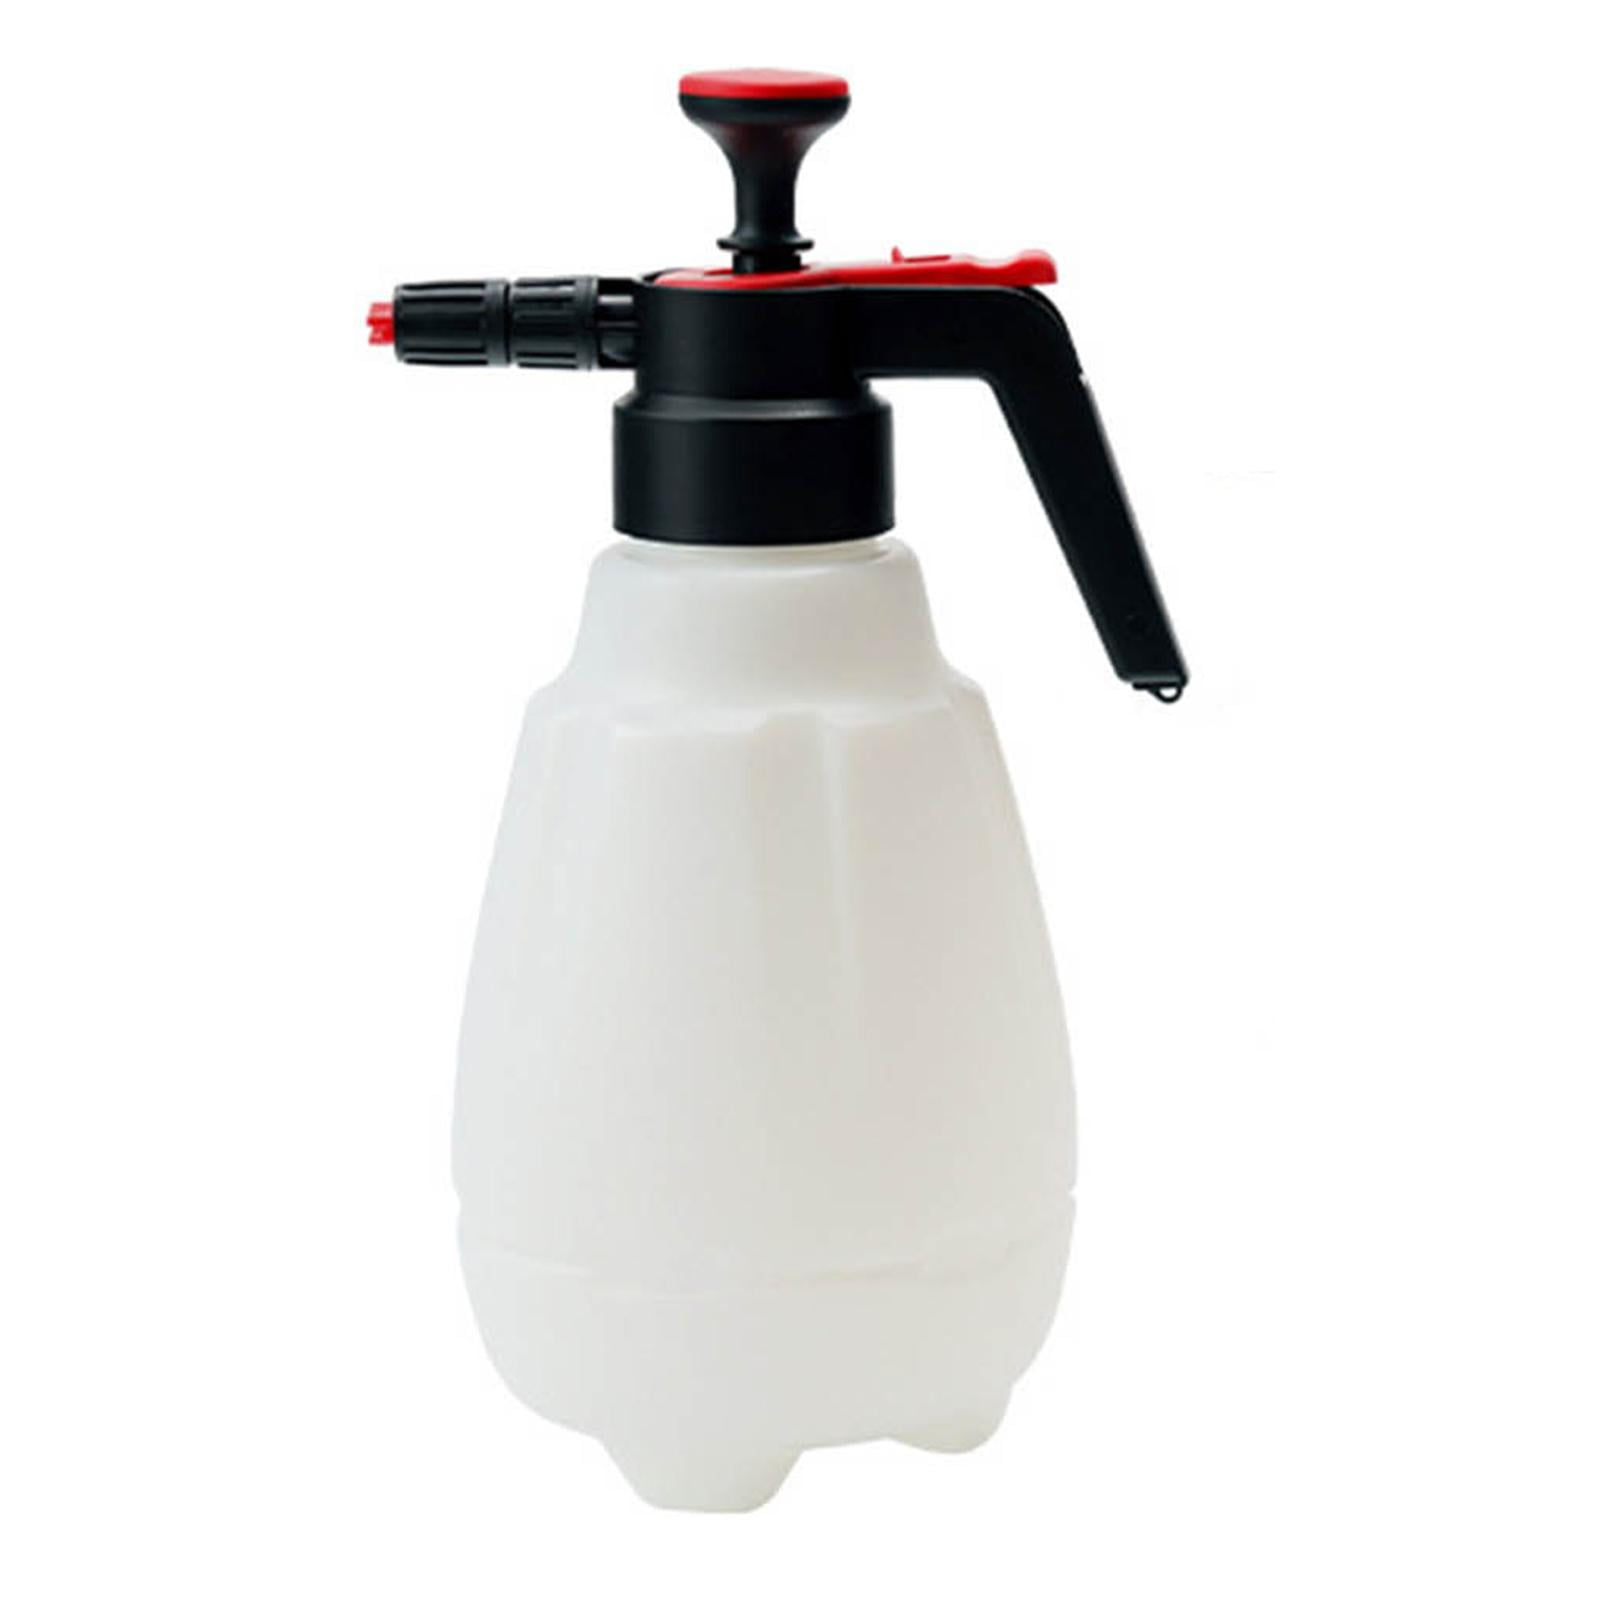 Buy Multifunction Foaming Spray Bottle in Pakistan